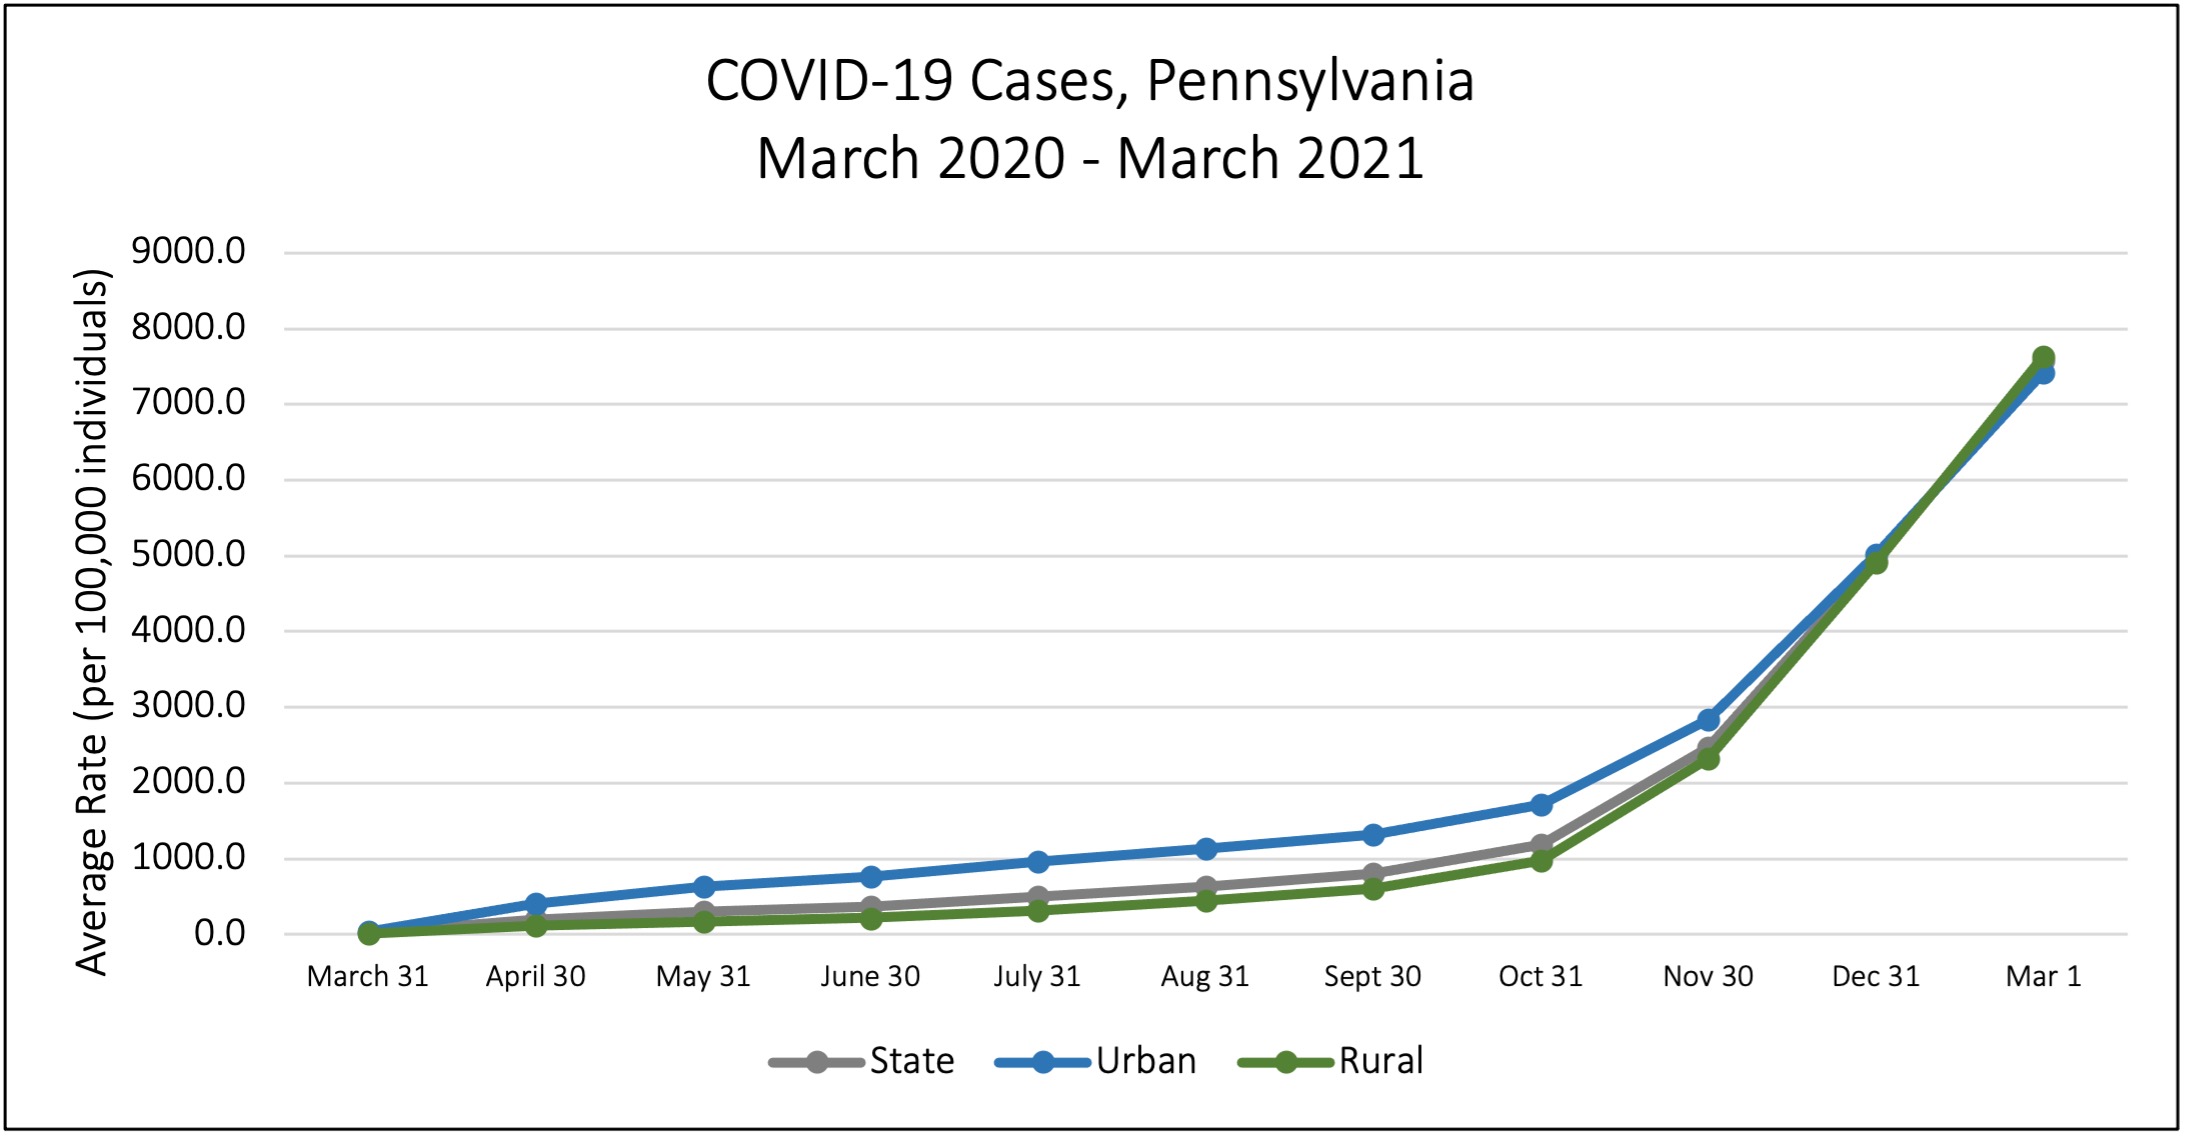 COVID-19 Cases, Pennsylvania March 2020 - March 2021